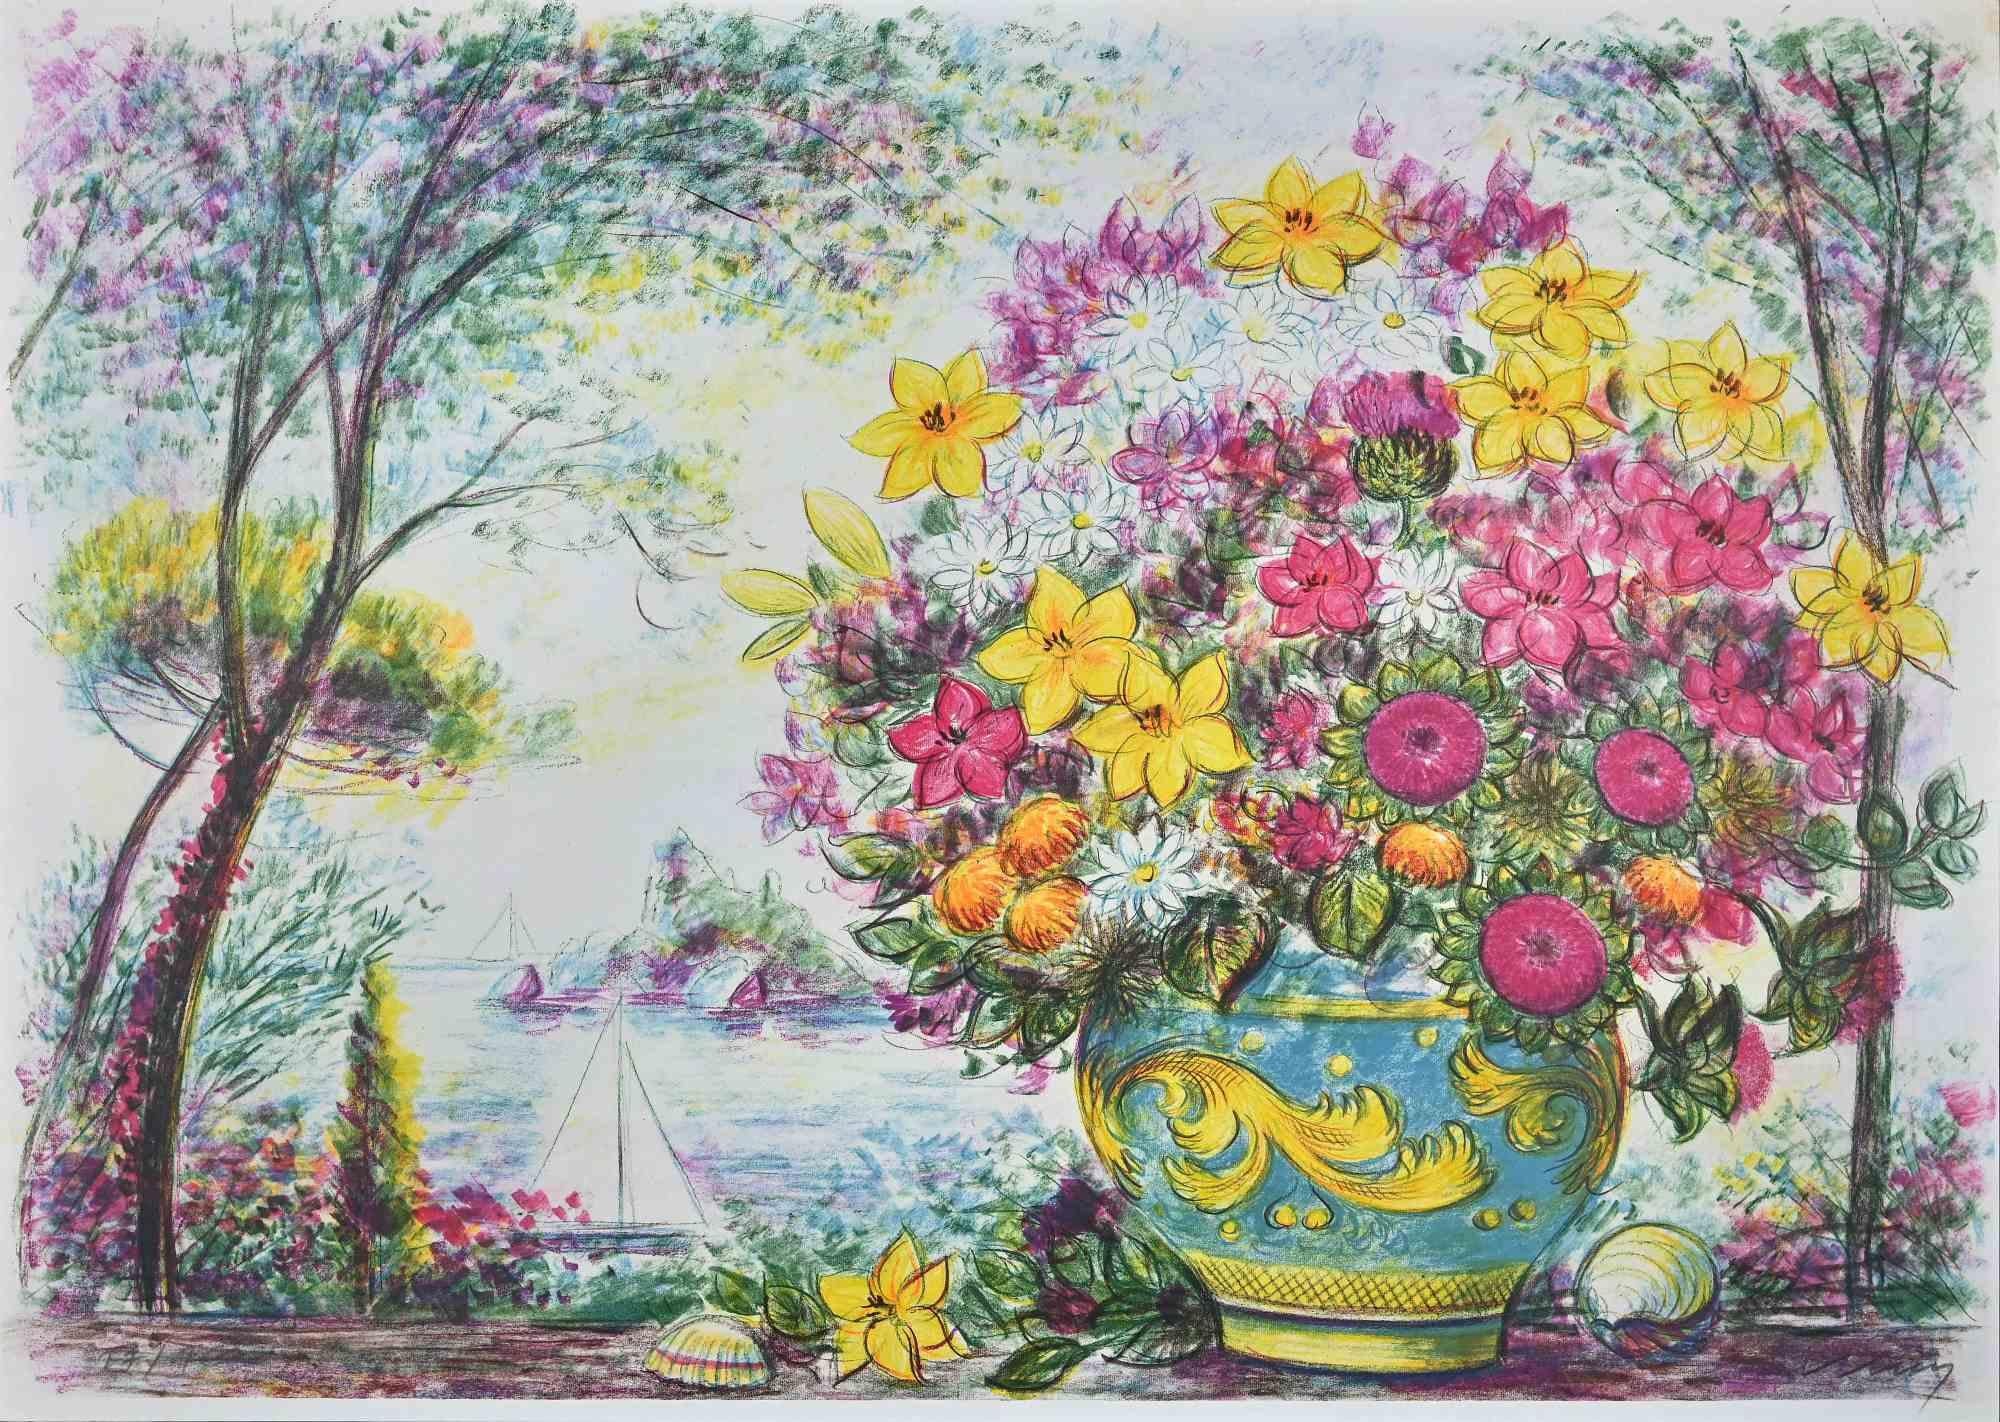 Flowerpot  - Original Lithograph by Jovan Vulic - 1988